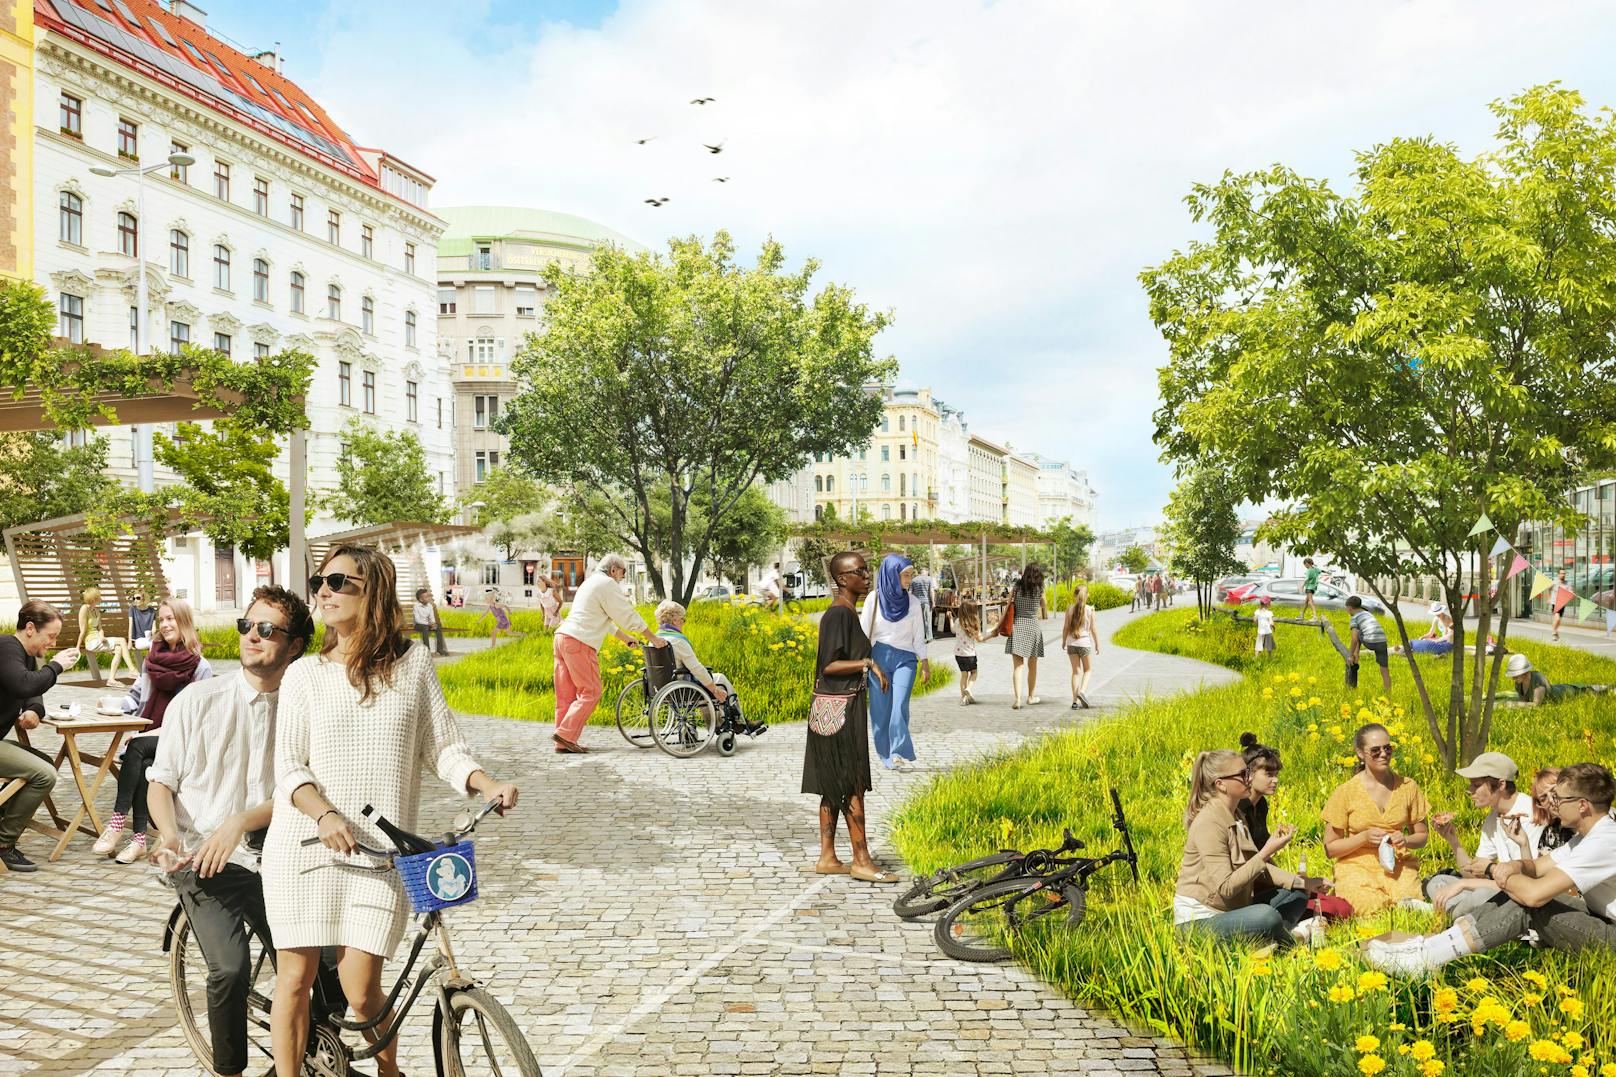 Die Wiener Grünen wollen die geplante Markthalle verhindern und stattdessen einen neuen Park schaffen. Die Idee wird bereits von über 12.000 Wienern unterstützt.